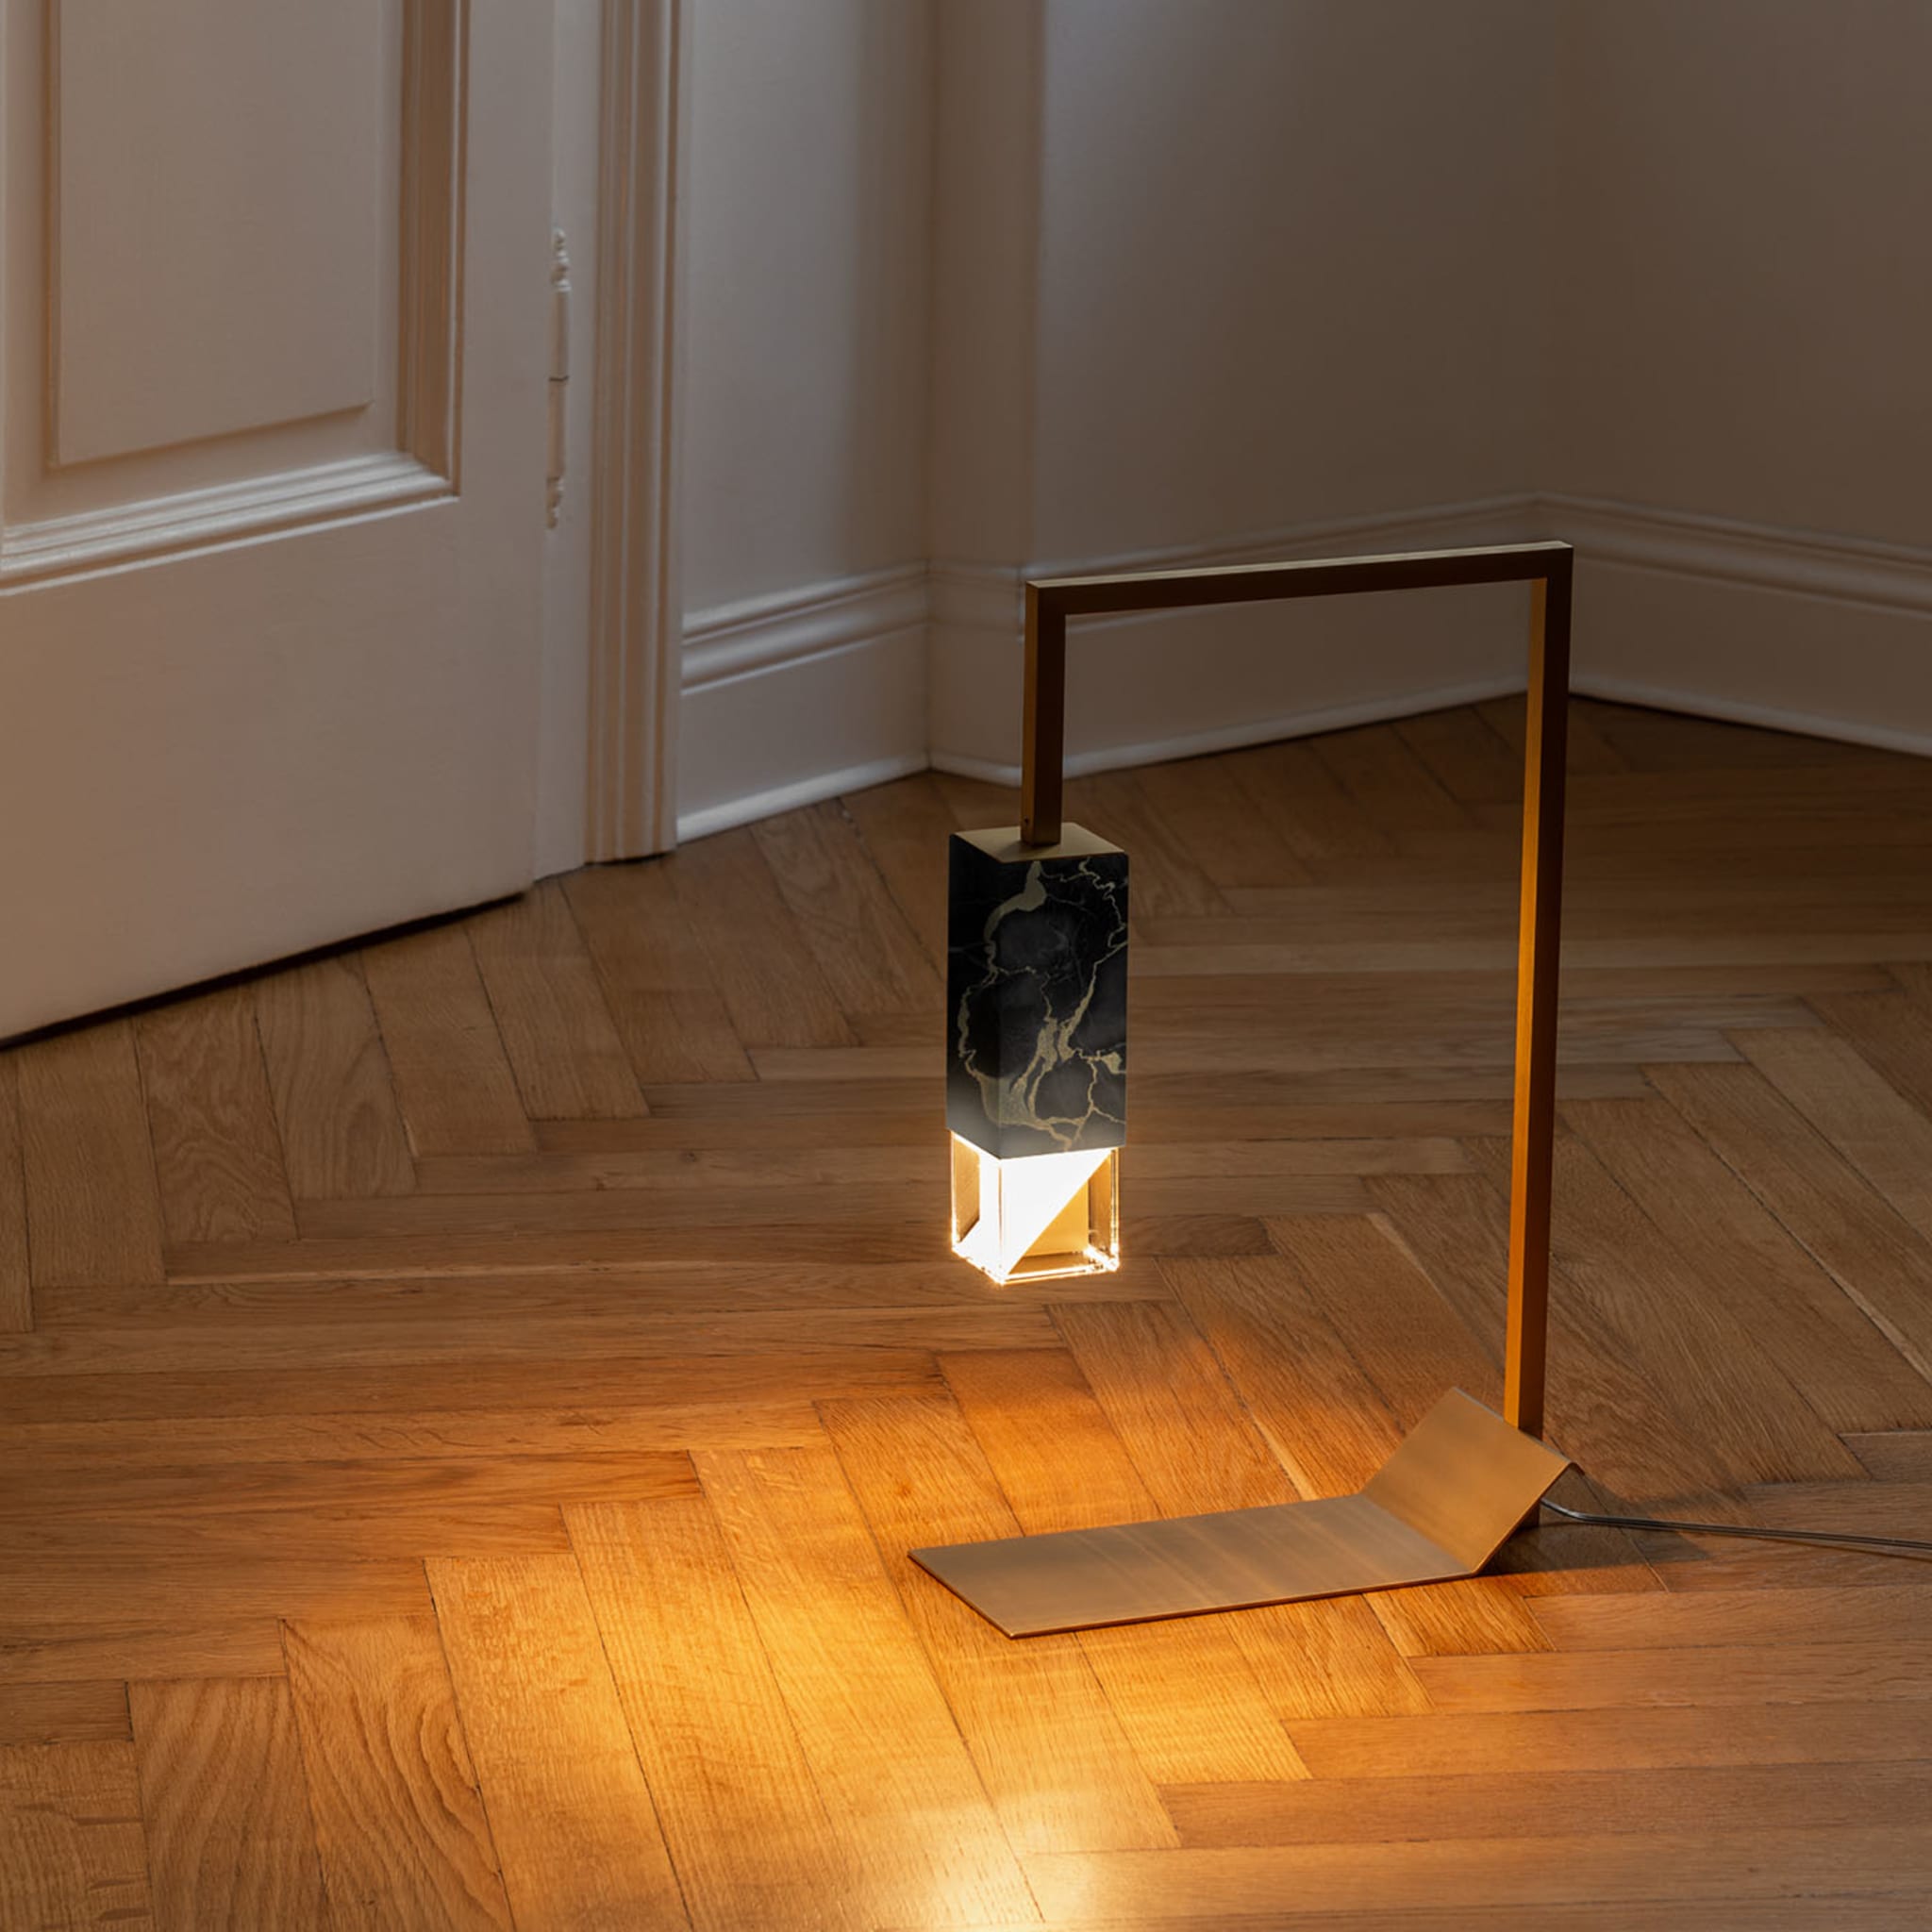  Lampe/Zwei schwarze Tische - Alternative Ansicht 5